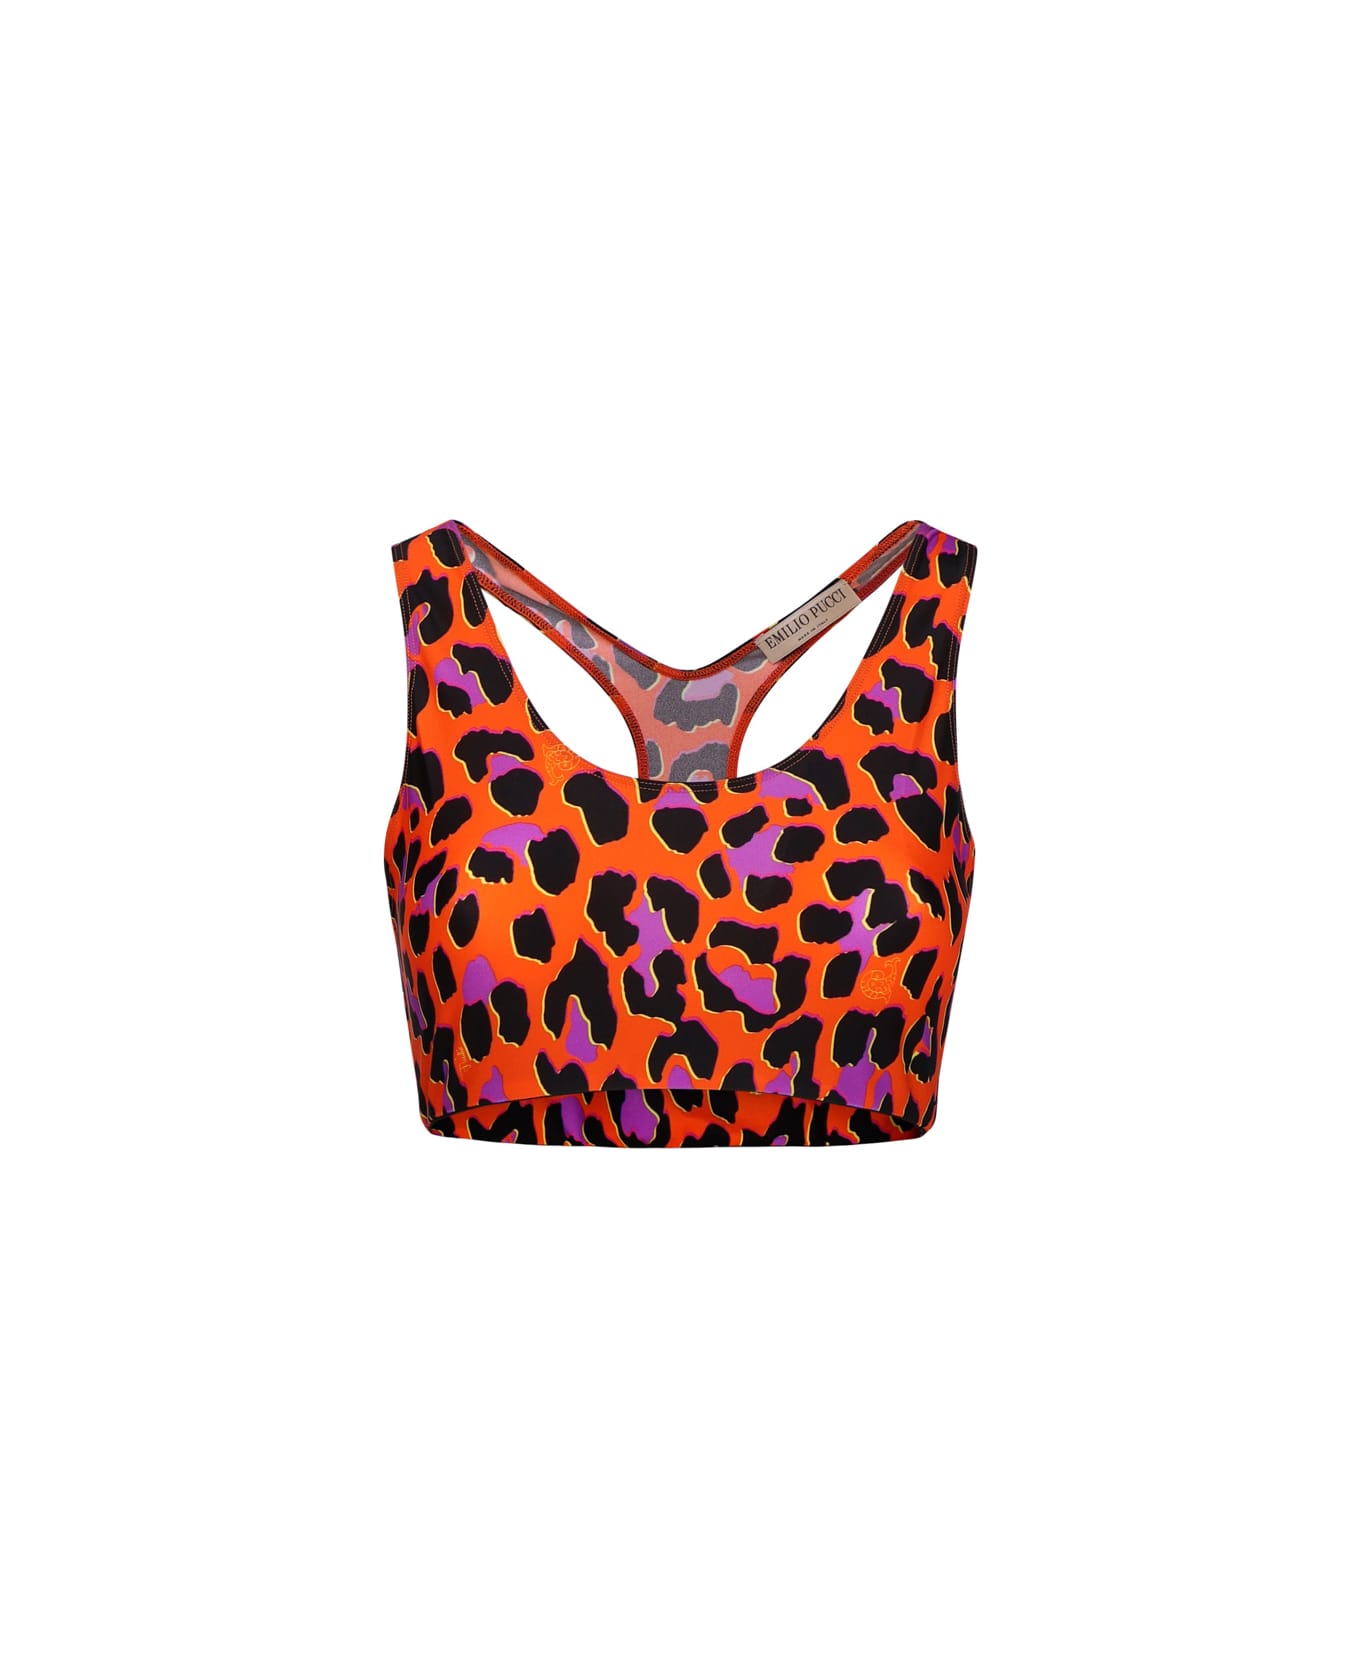 Pucci Leopard Print Crop Top - Arancio トップス